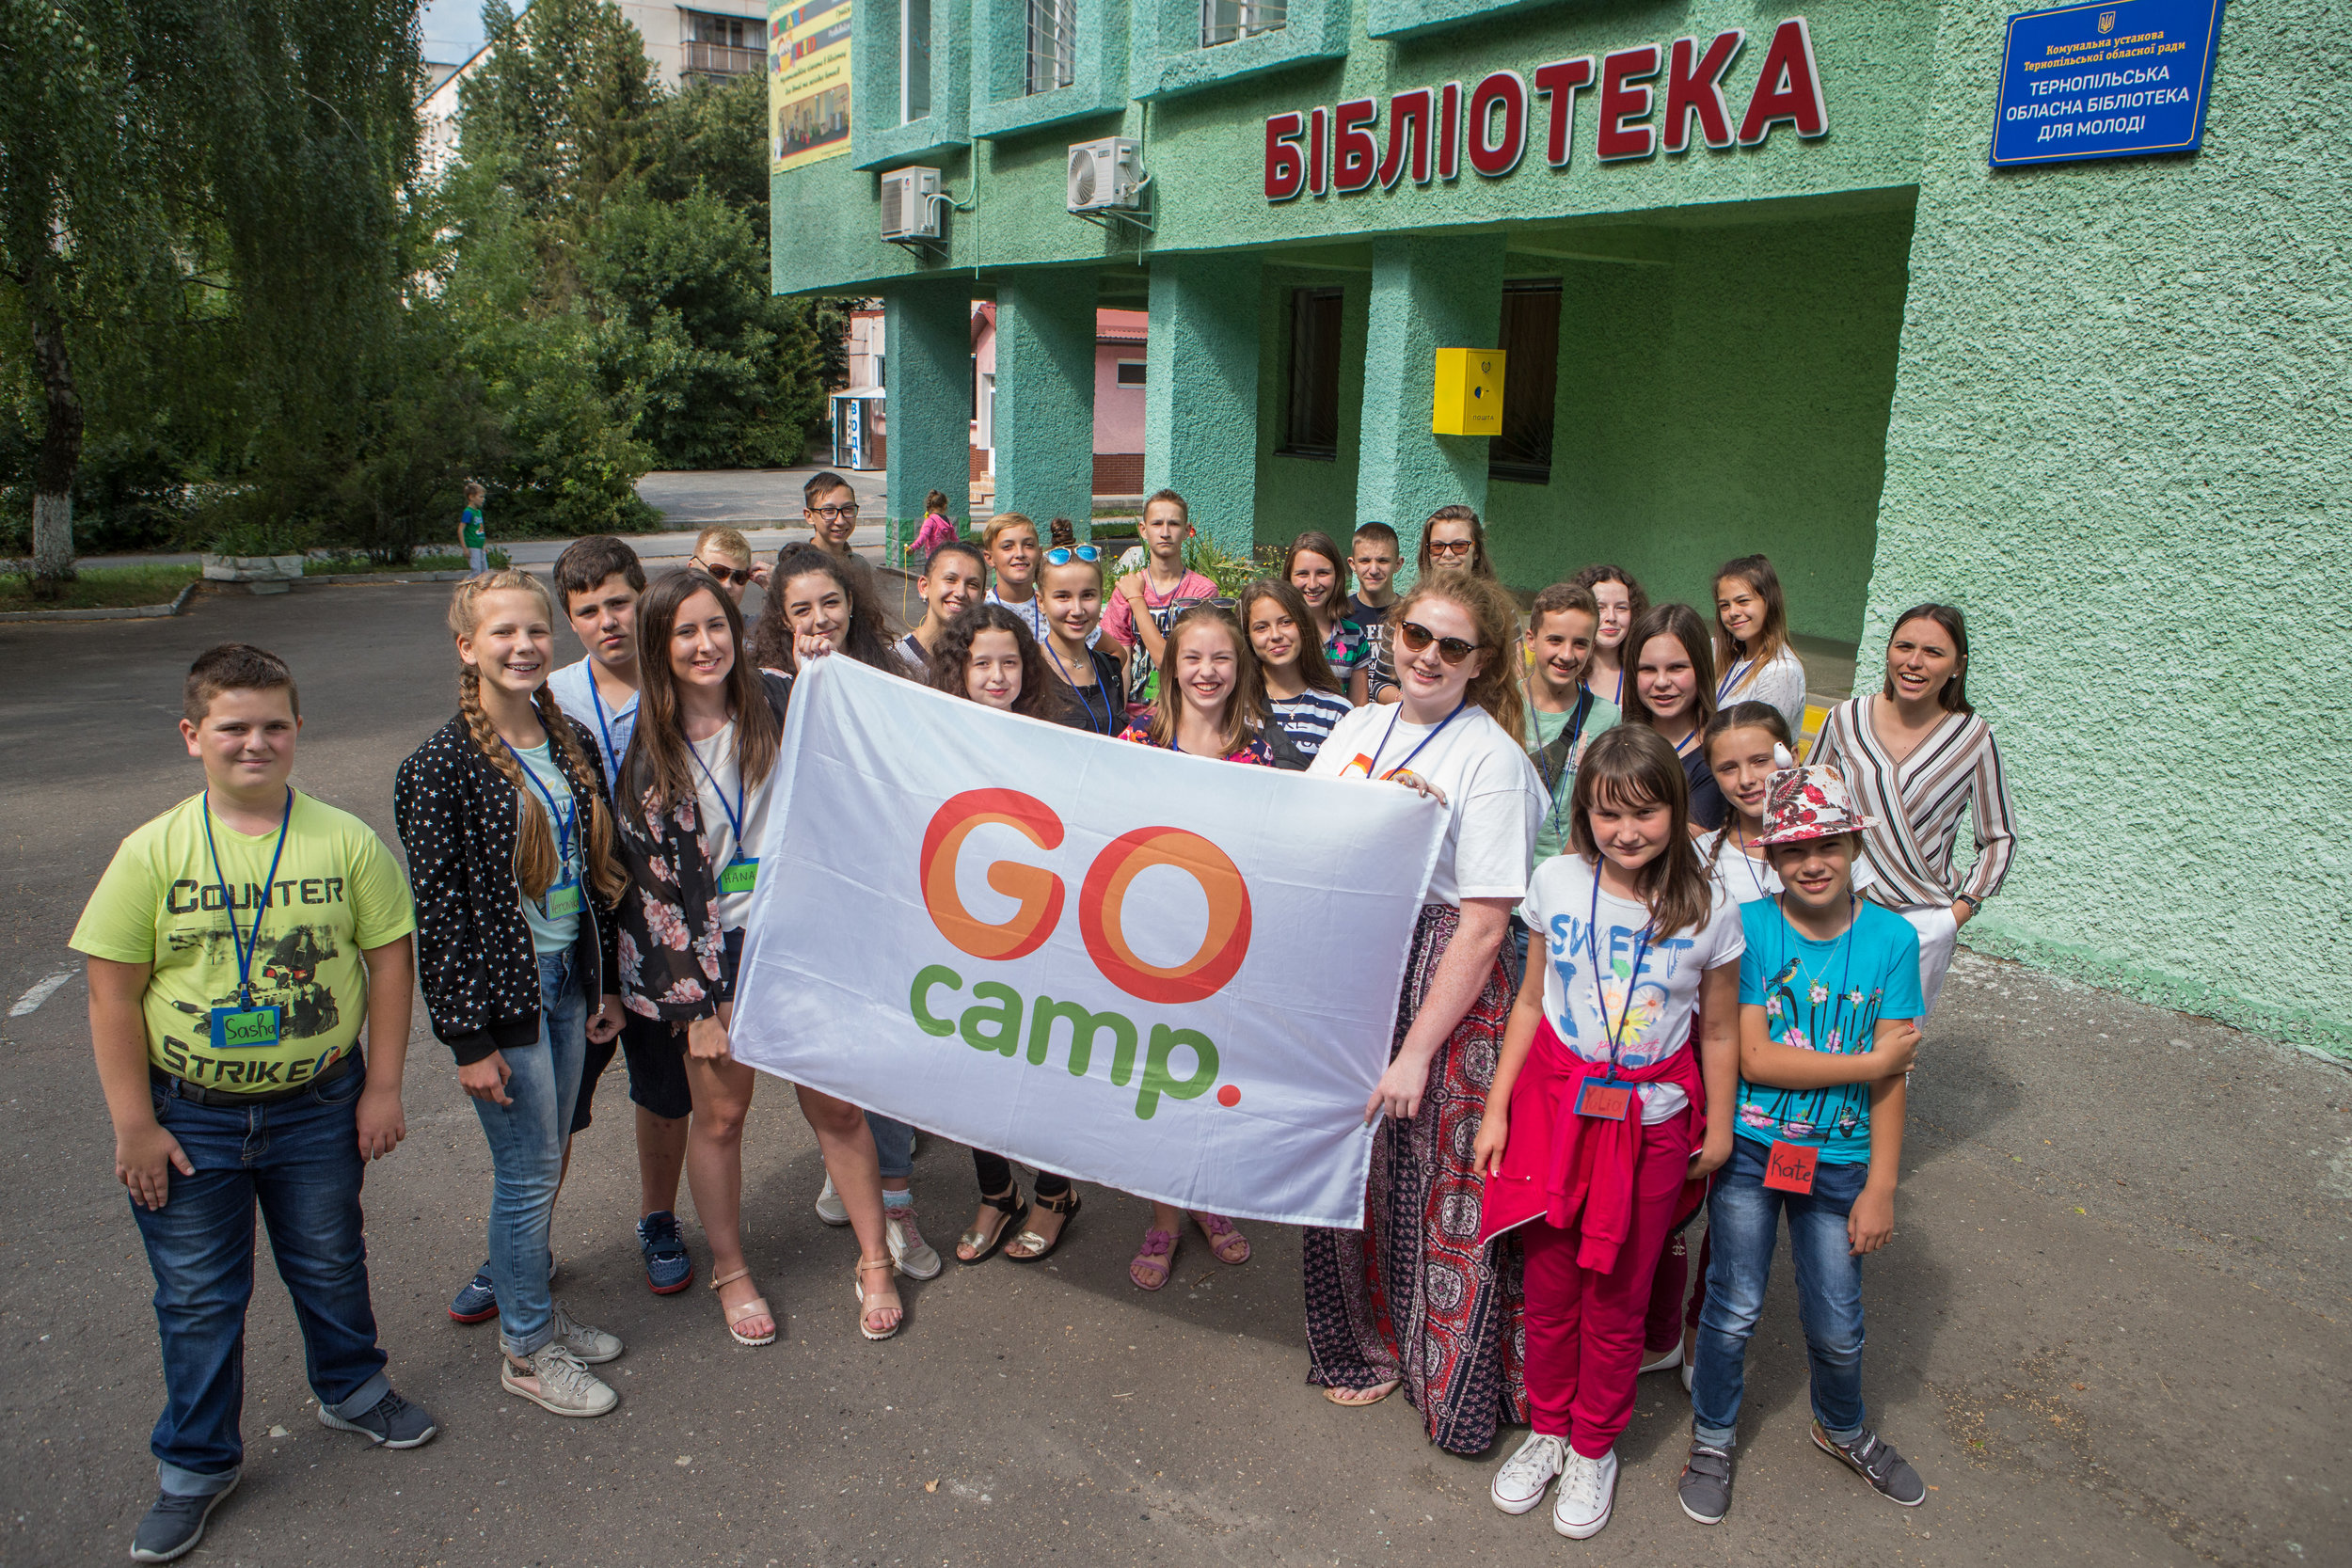 Children &amp; GO camp in Ukraine